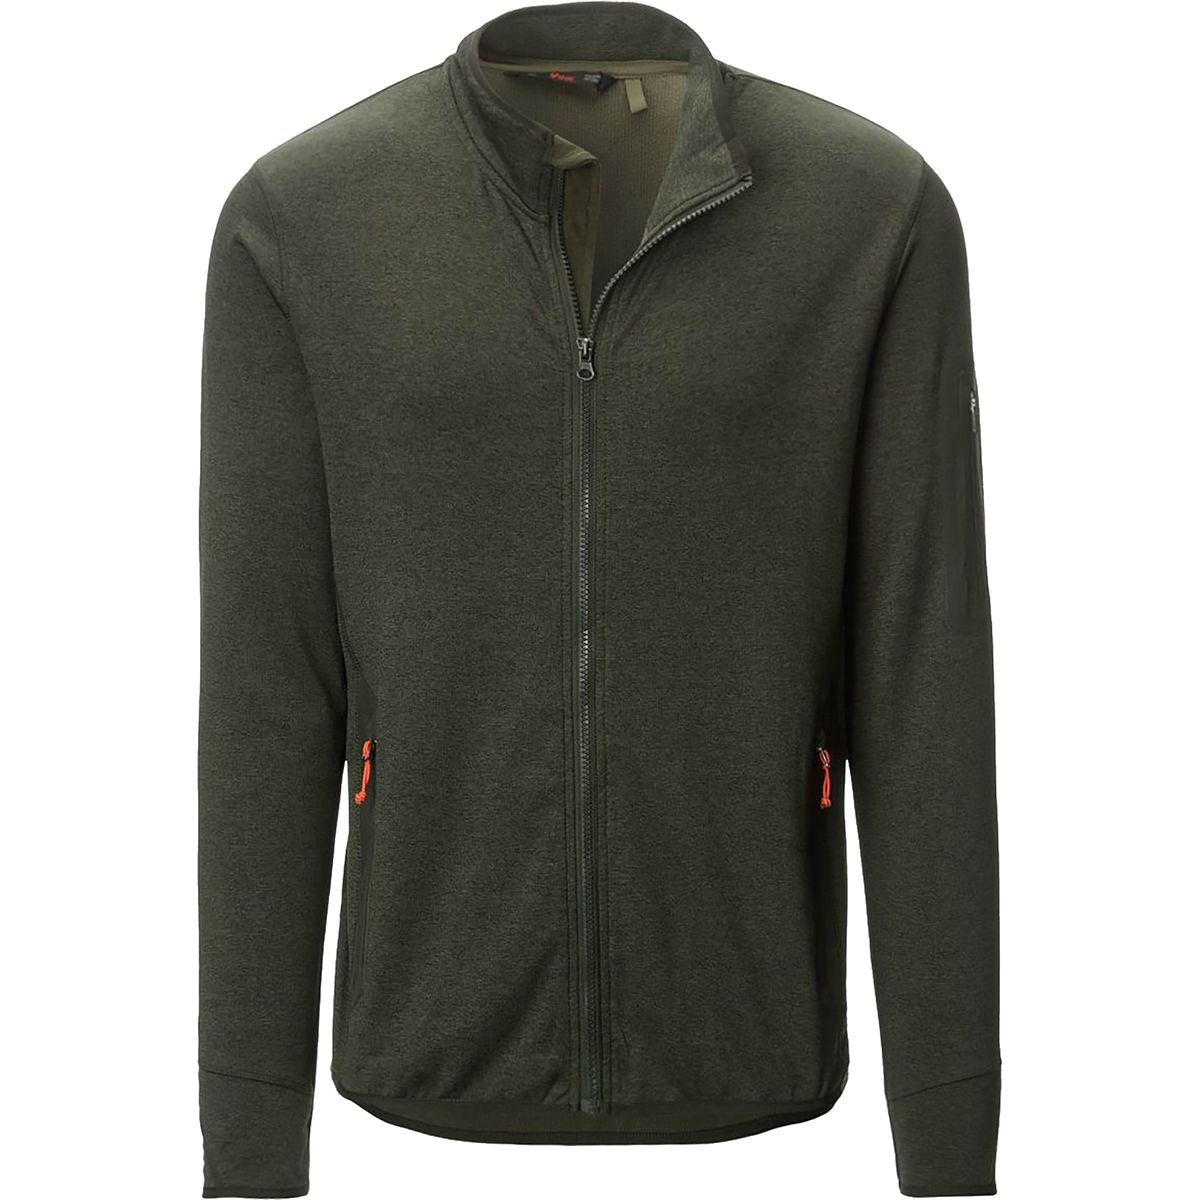 Stoic Full-Zip Fleece Jacket - Men's - Clothing